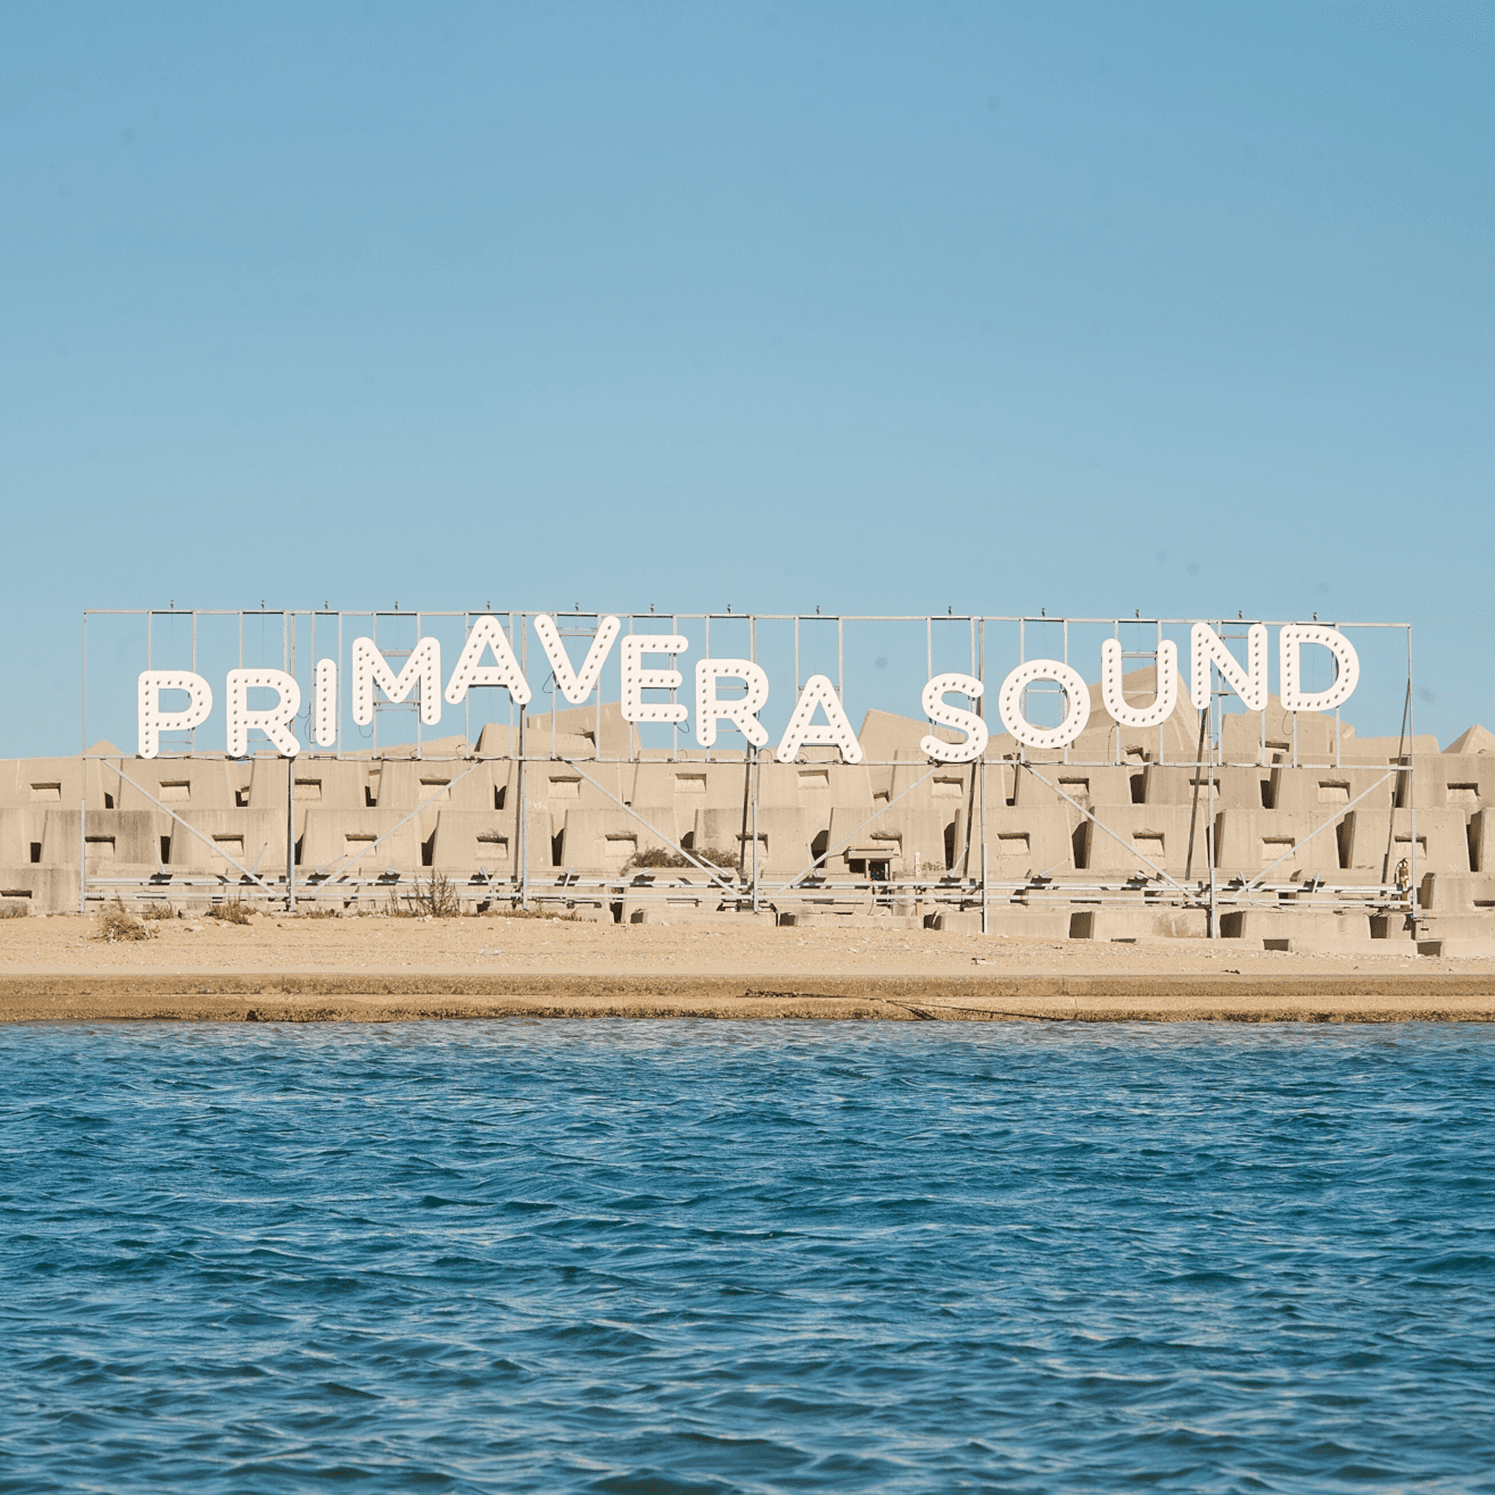 PRIMAVERA SOUND